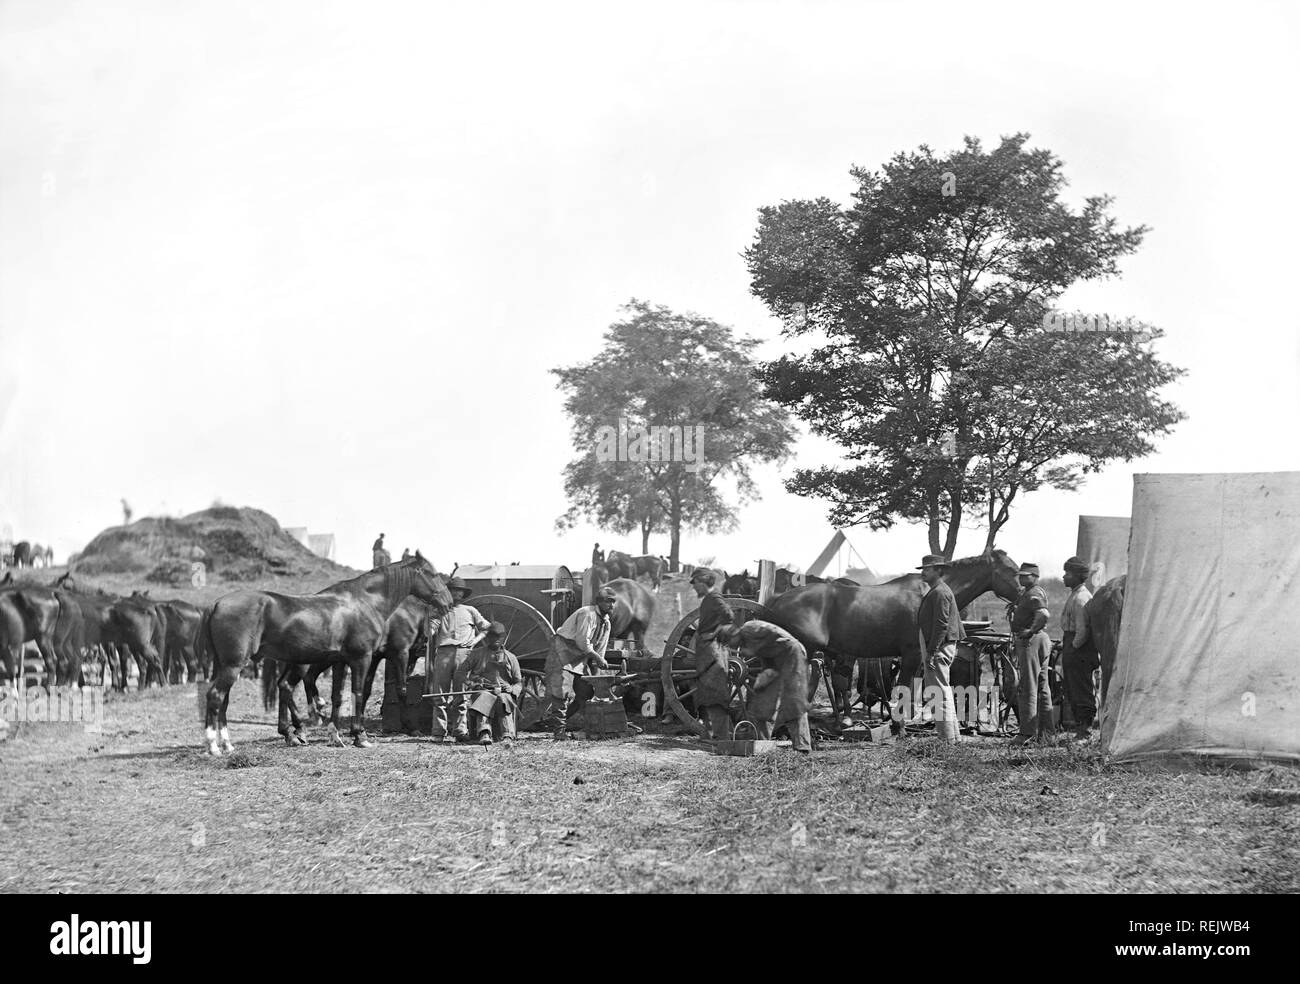 Blacksmith ferrer les chevaux à l'Administration centrale, de l'armée du Potomac, Bataille d'Antietam, Maryland, USA, Alexander Gardner, Septembre 1862 Banque D'Images